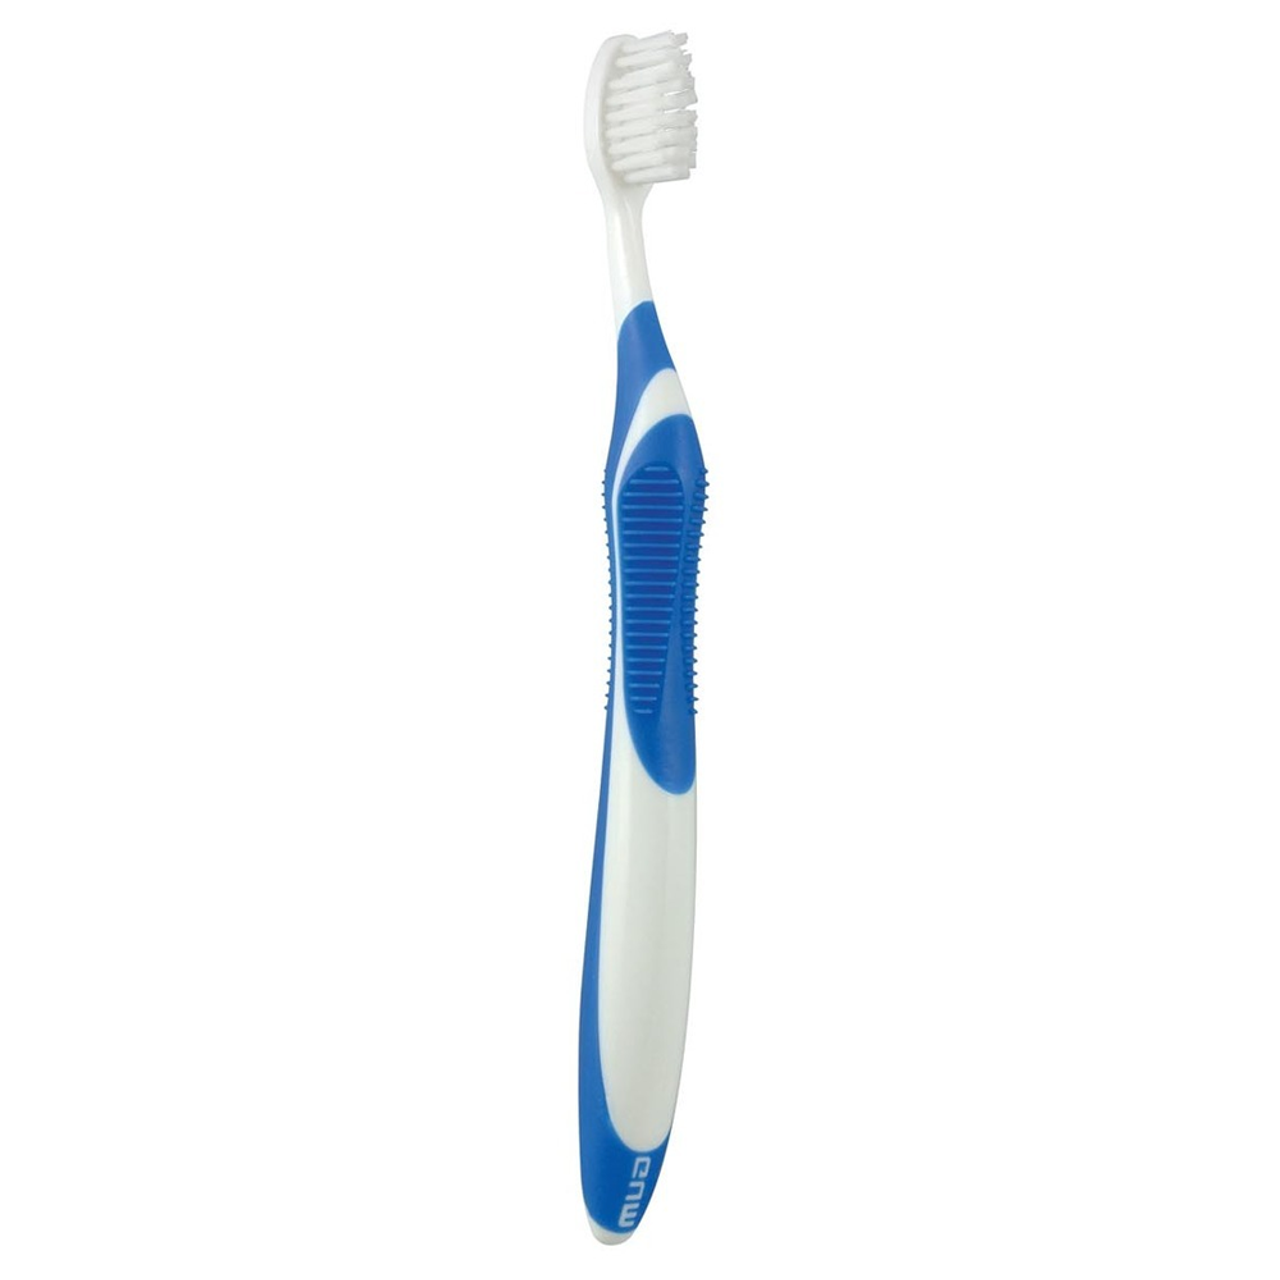 Sunstar GUM Technique Toothbrush, Sensitive Bristles, Compact Head, 1 dz/bx